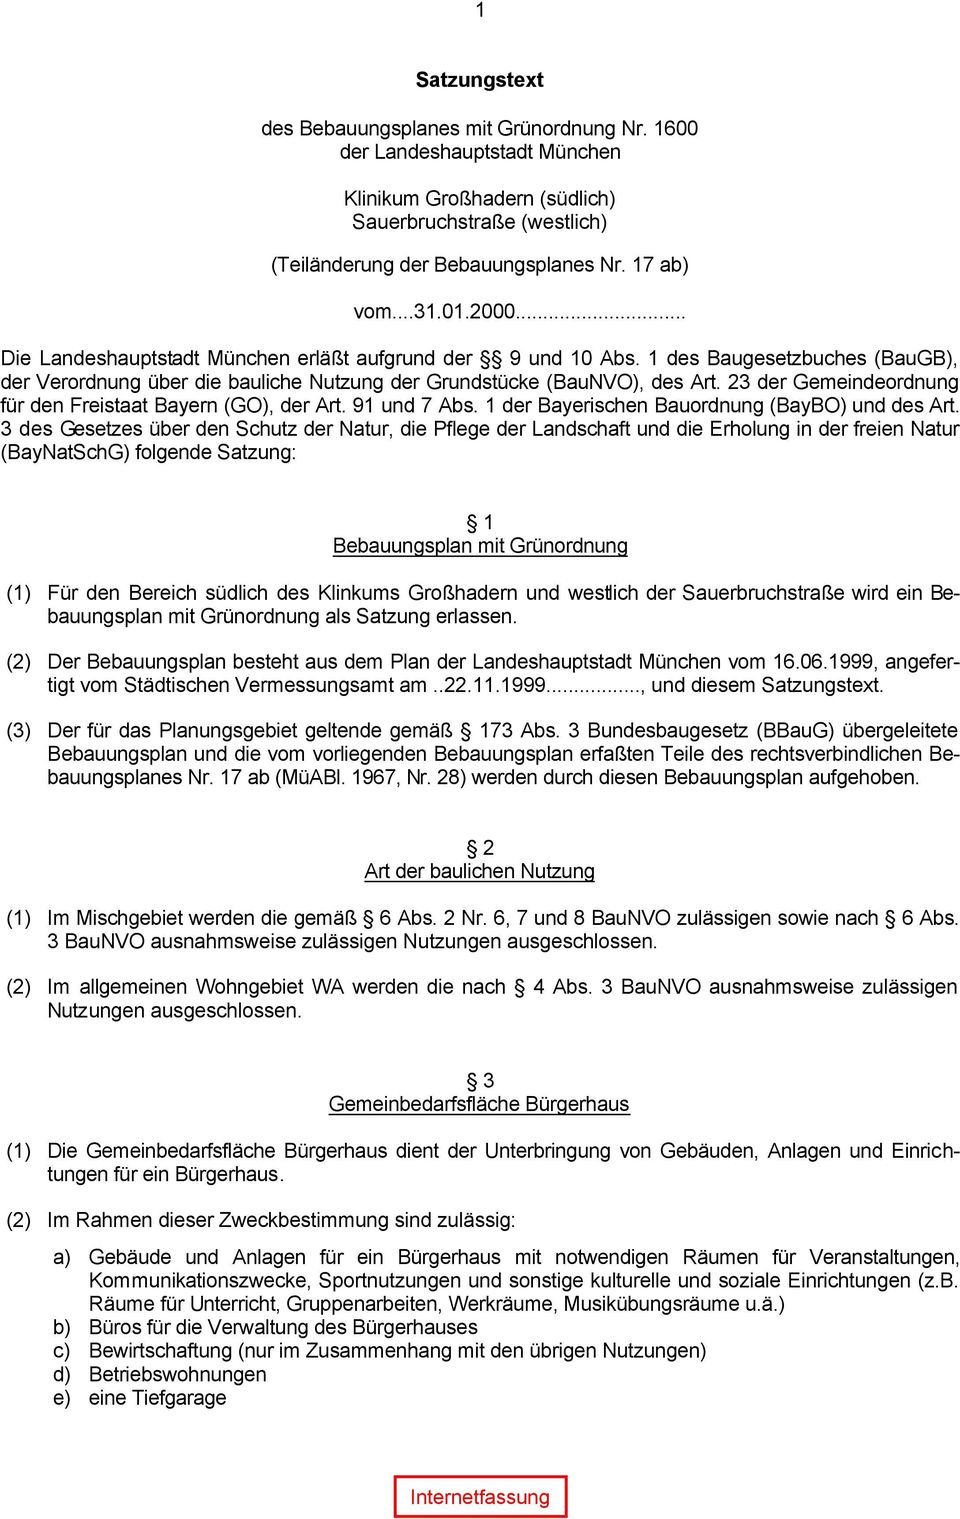 23 der Gemeindeordnung für den Freistaat Bayern (GO), der Art. 91 und 7 Abs. 1 der Bayerischen Bauordnung (BayBO) und des Art.